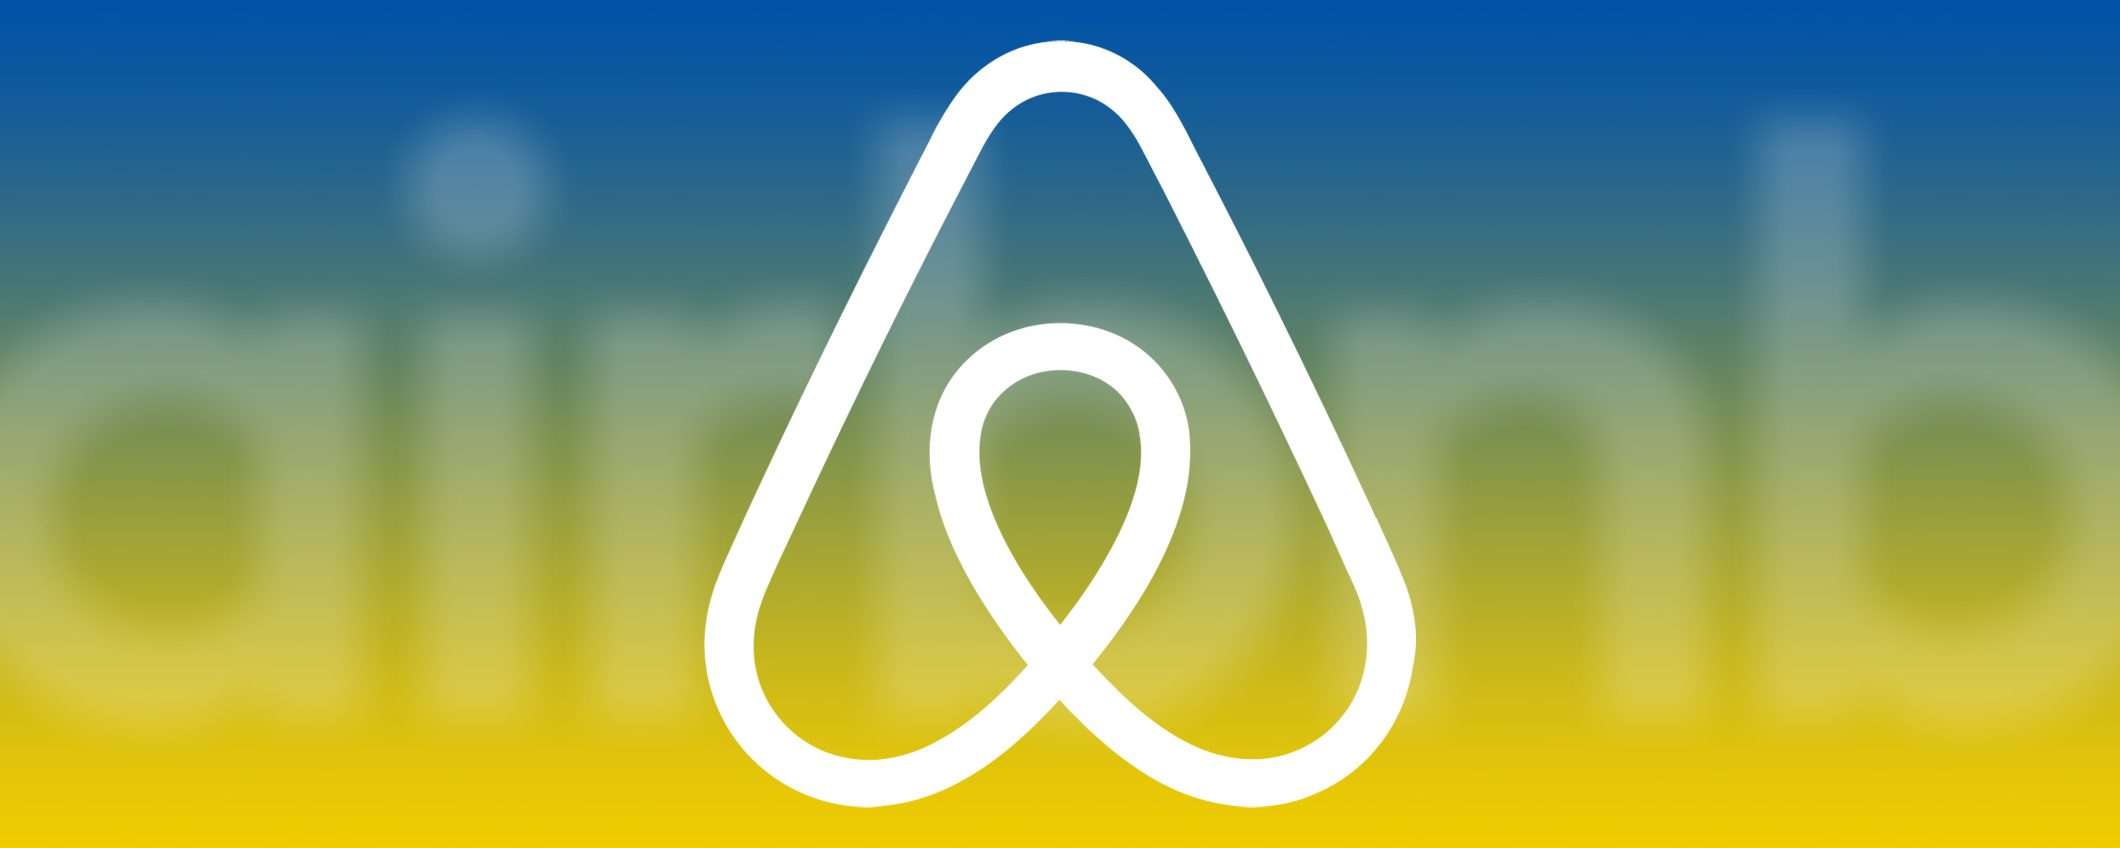 Airbnb vieta le videocamere di sicurezza indoor